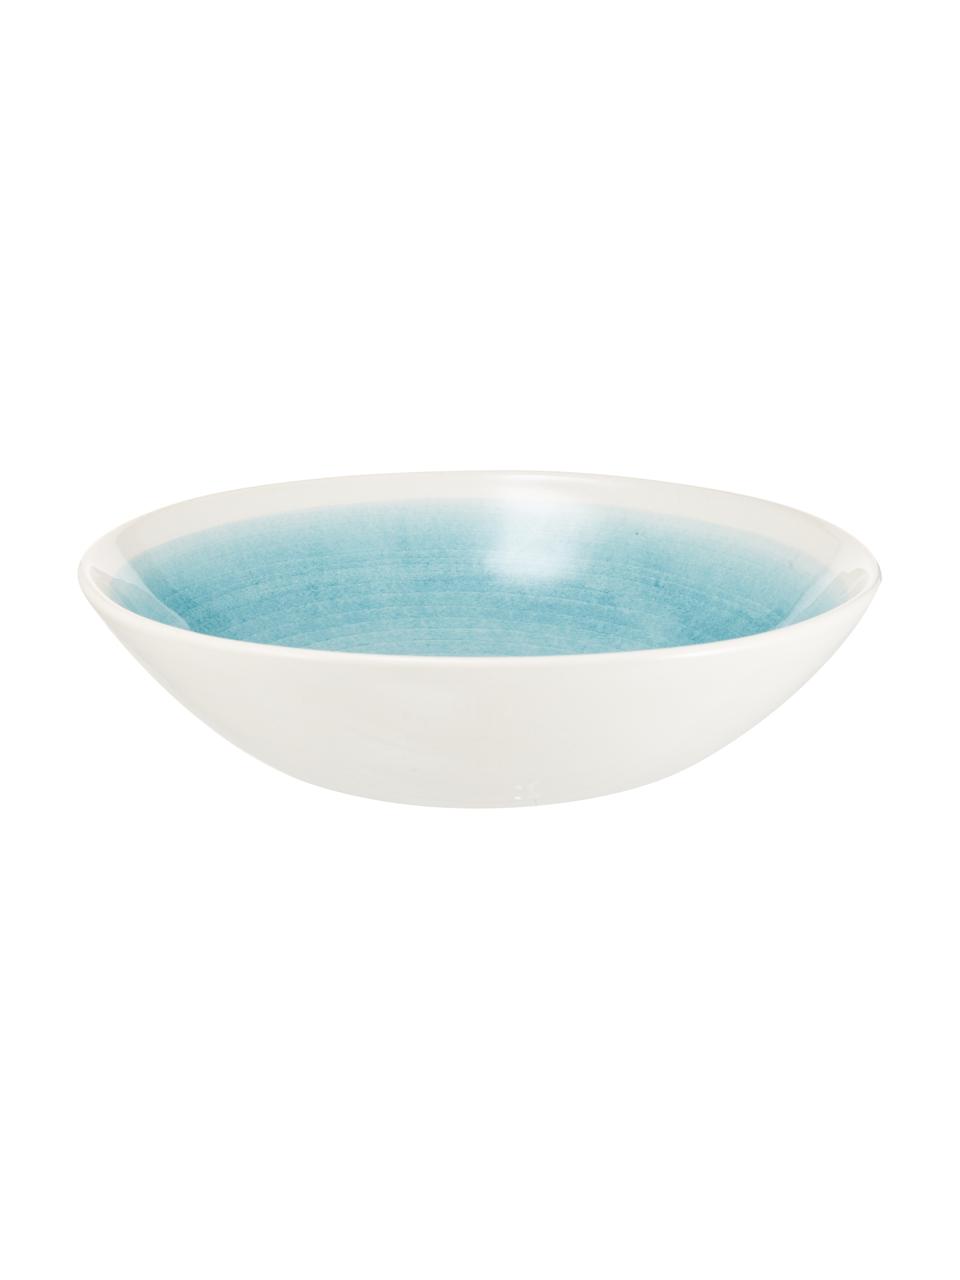 Ručně vyrobená salátová mísa s barevným přechodem Pure, Ø 26 cm, Keramika, Modrá, bílá, Ø 26 cm, V 7 cm